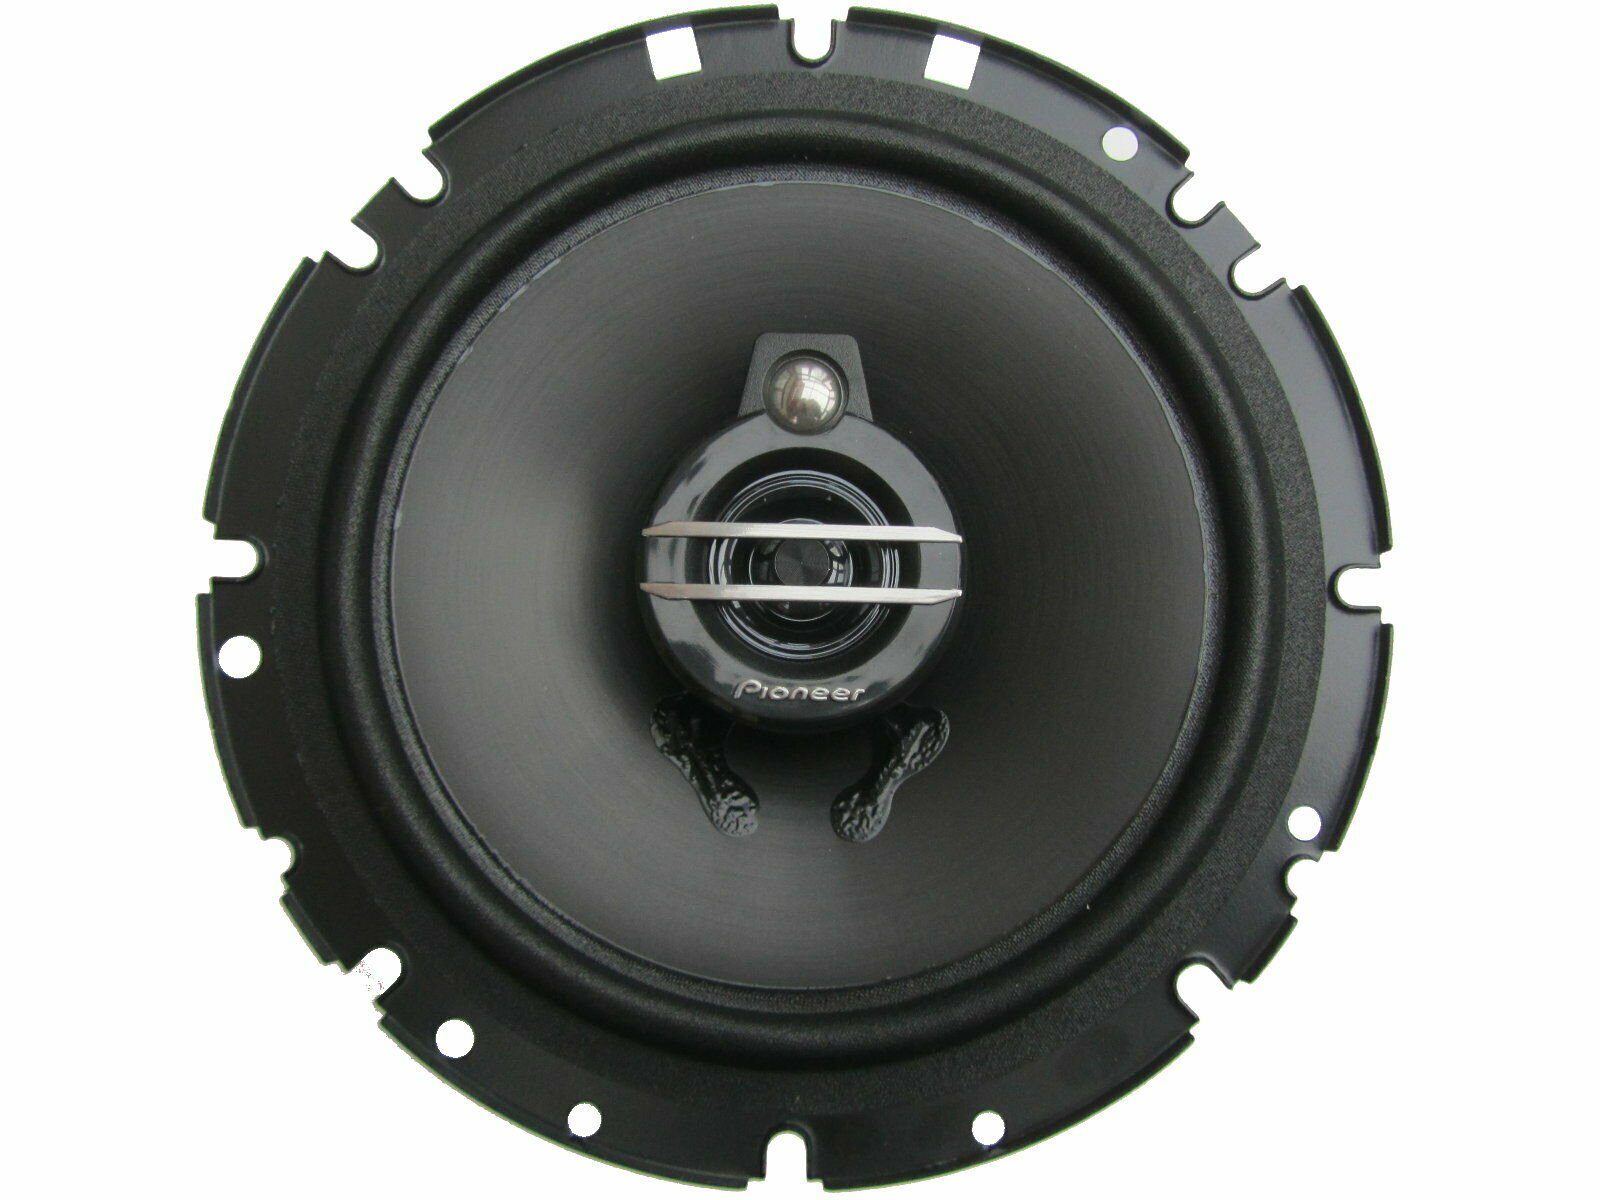 Mii Pioneer Lautsp (40 11-21 Auto-Lautsprecher passend für W) Seat DSX Bj 3Wege